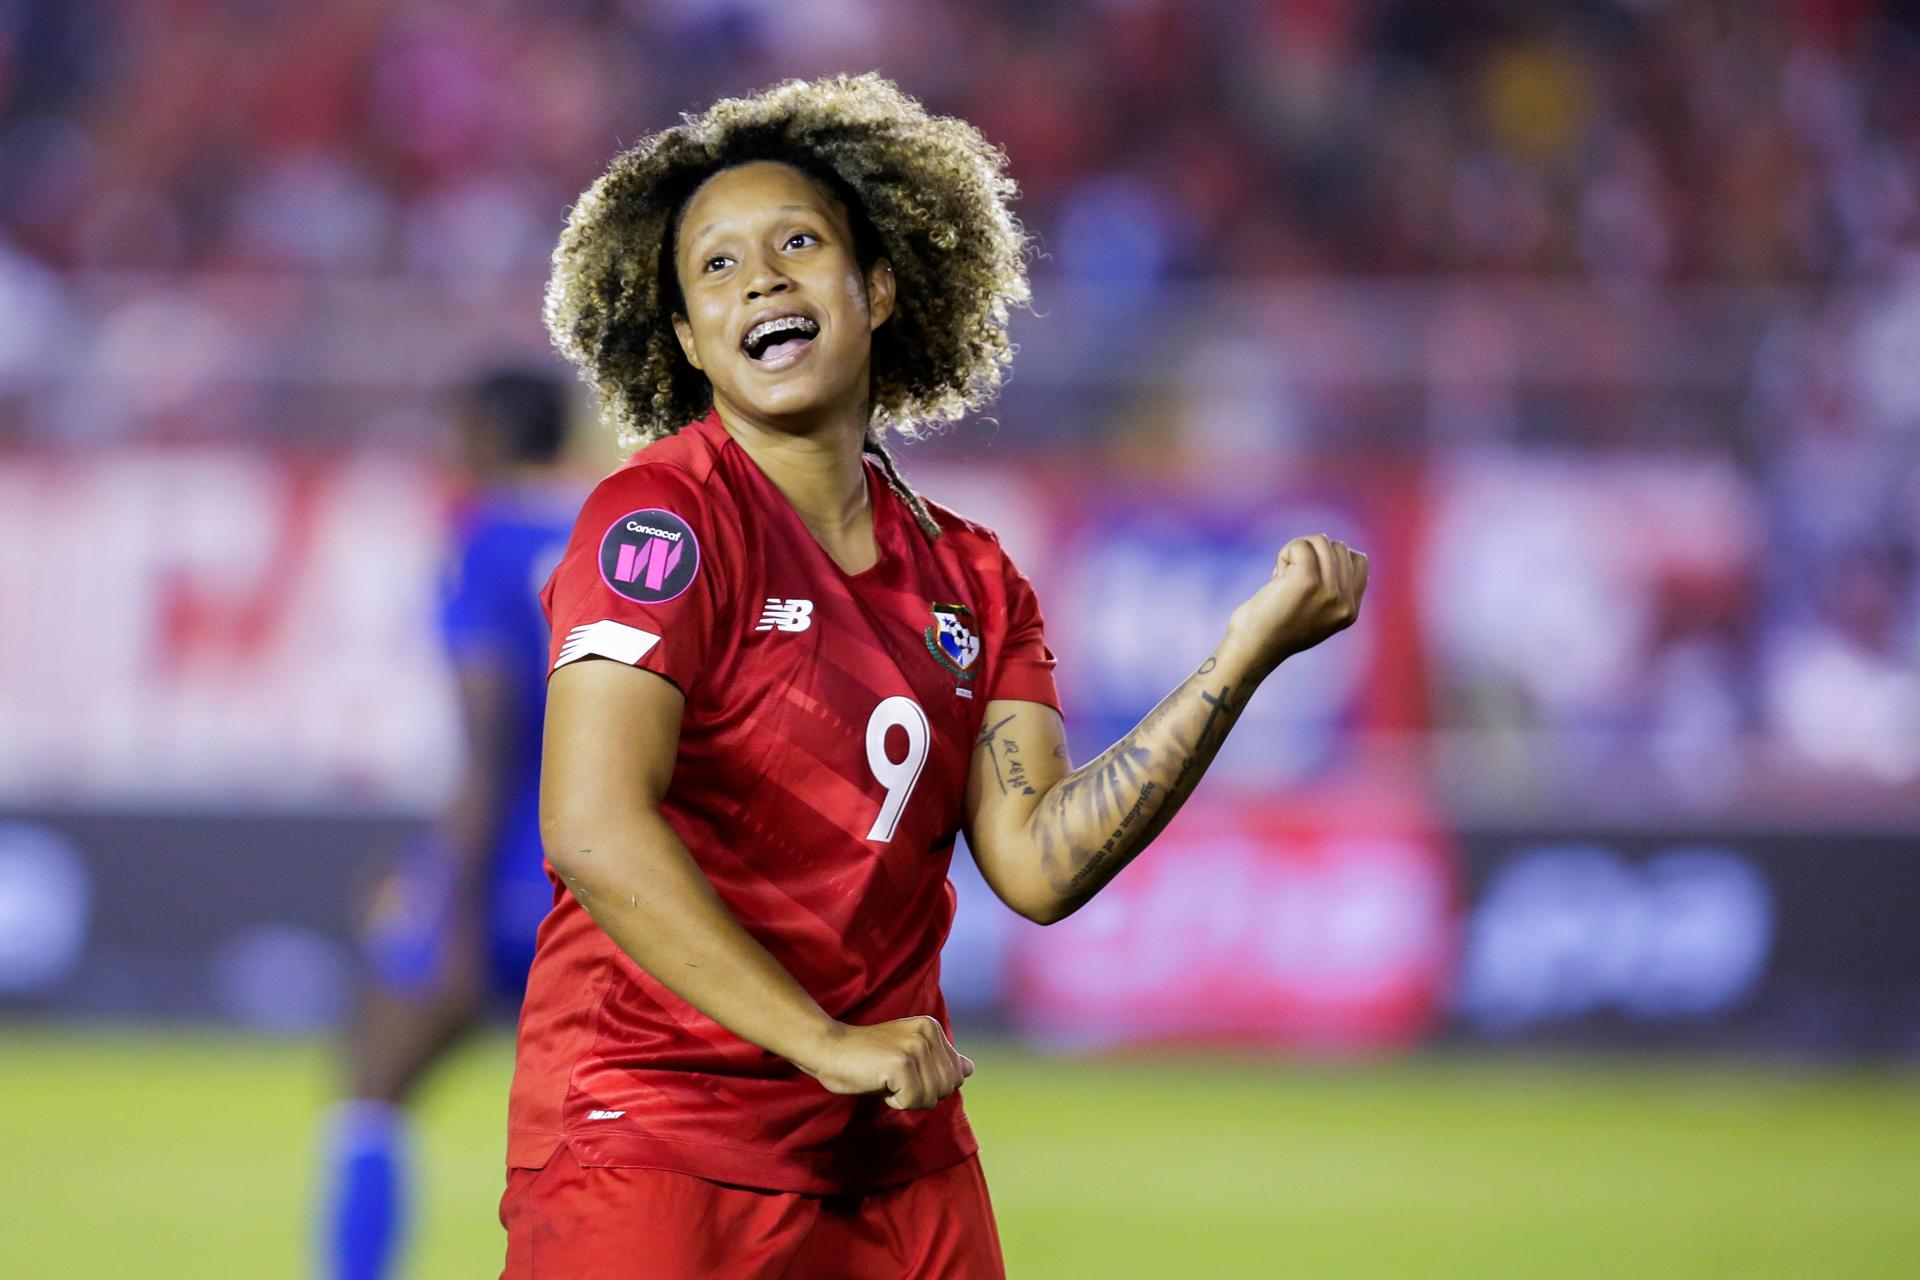 La delantera Karla Riley dijo que Panamá intentará superar todos sus límites en el Mundial